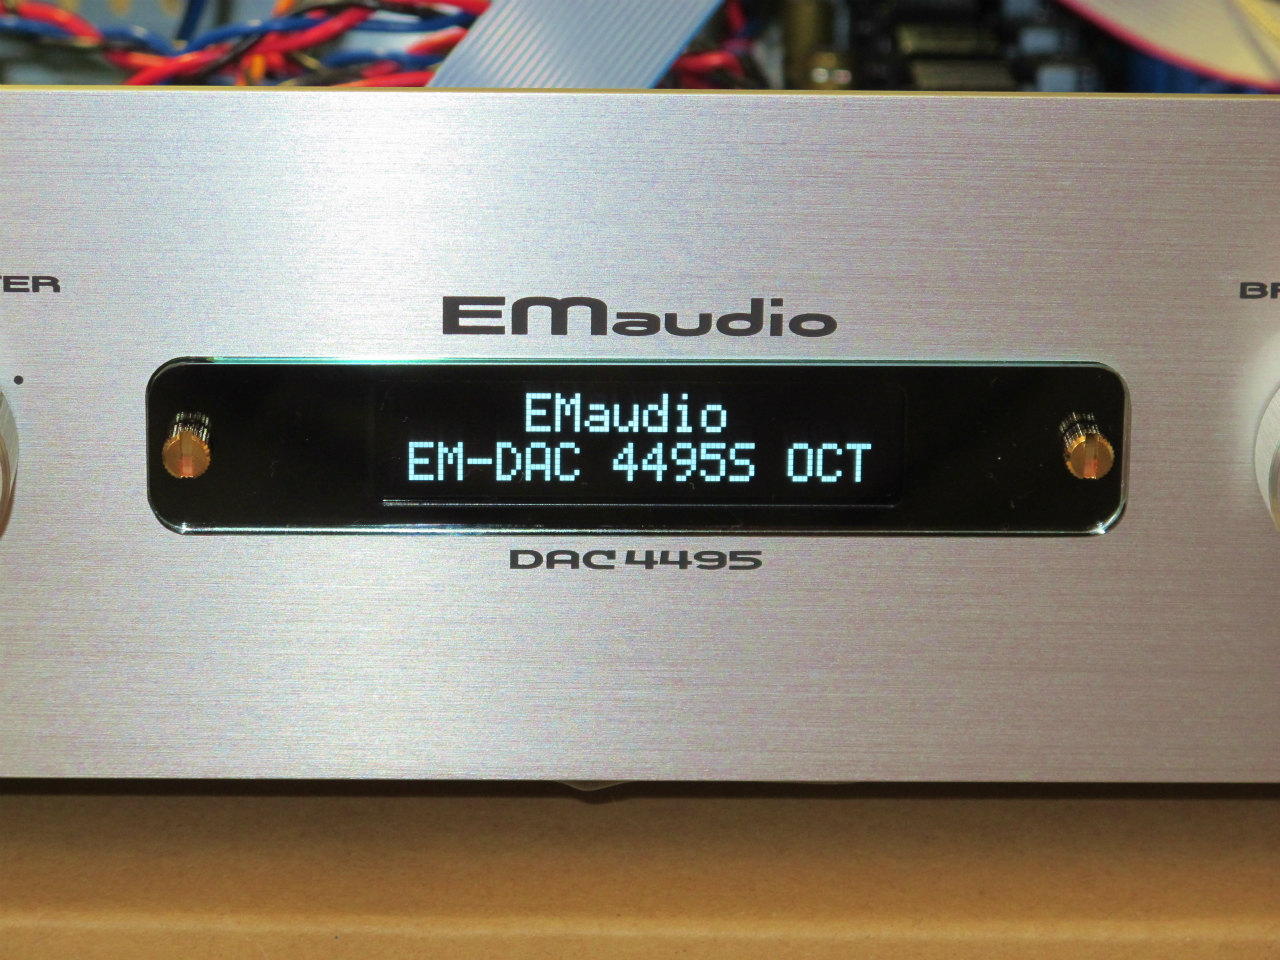 EM audio emisuke DAC4495OCT エミスケ dac | tspea.org